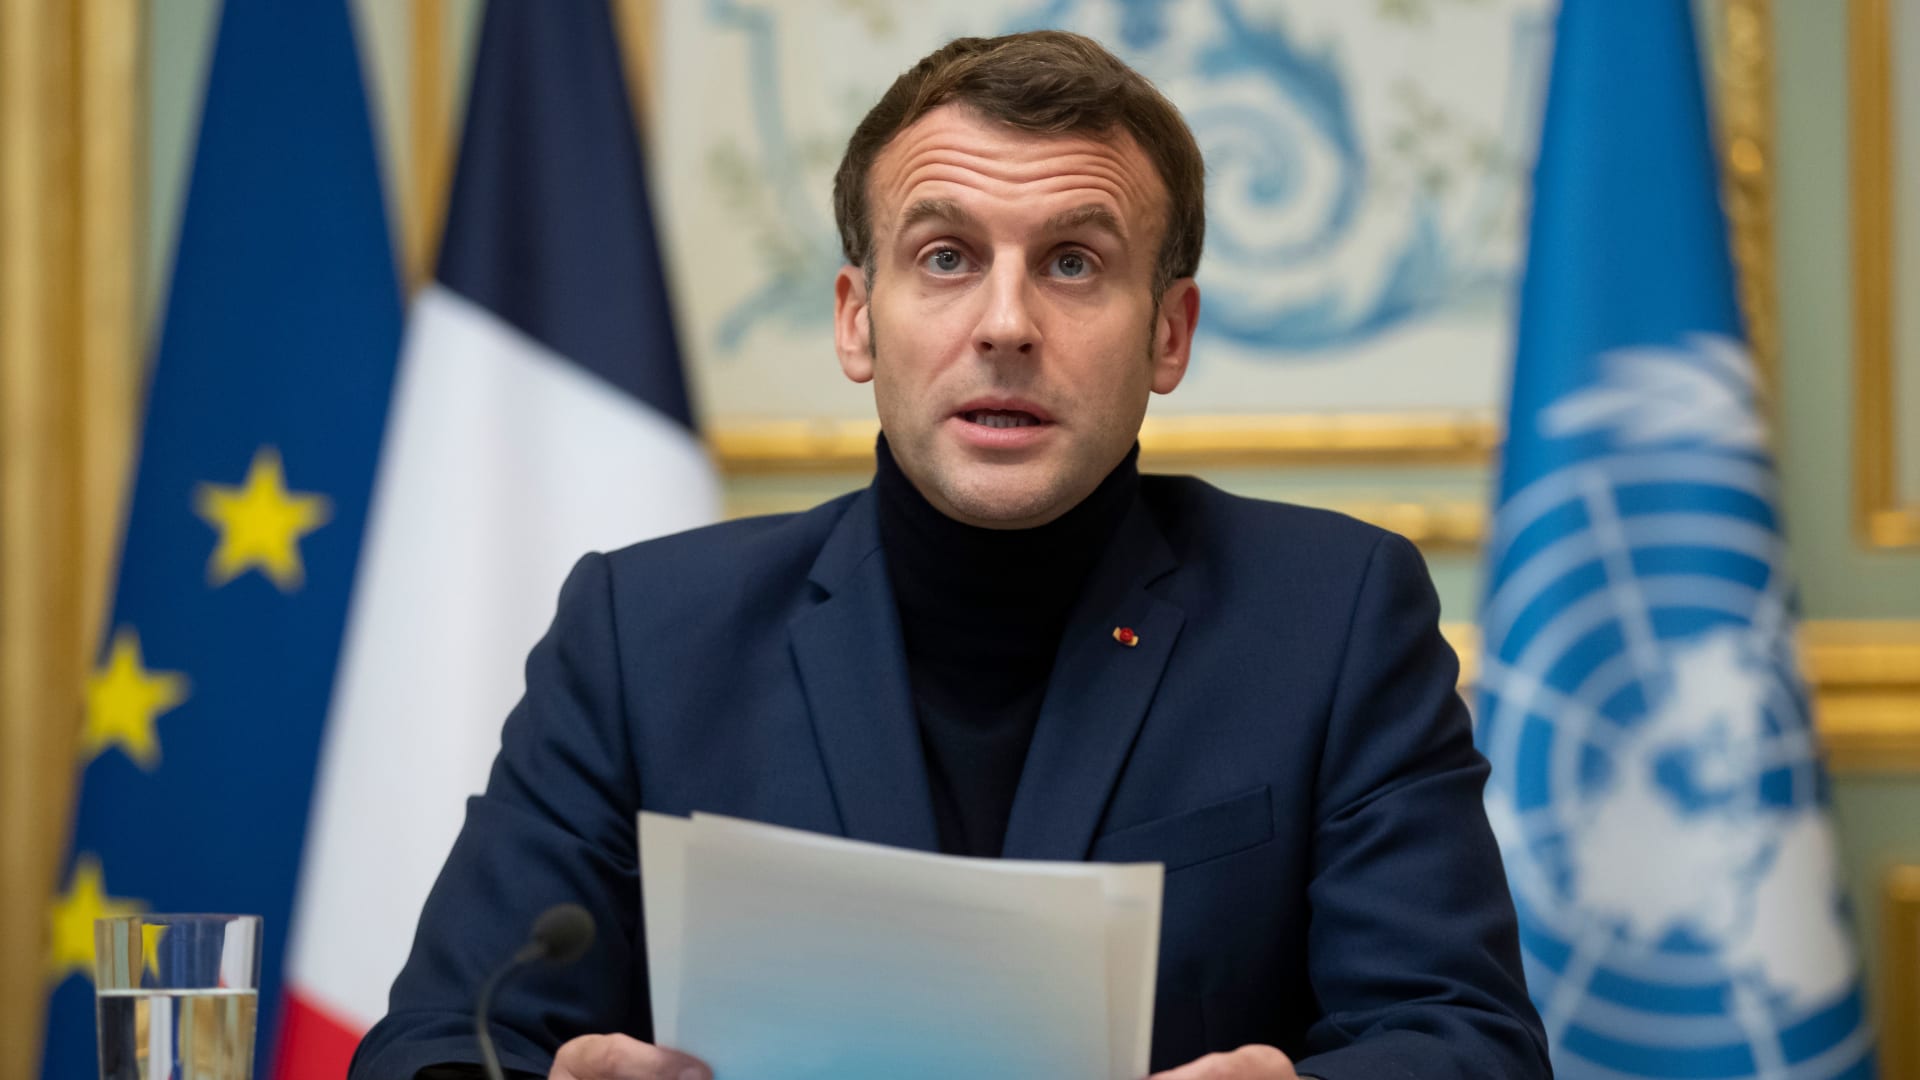 بعد تدهور الأوضاع الاقتصادية.. فرنسا تعلن عقد مؤتمر جديد لدعم لبنان